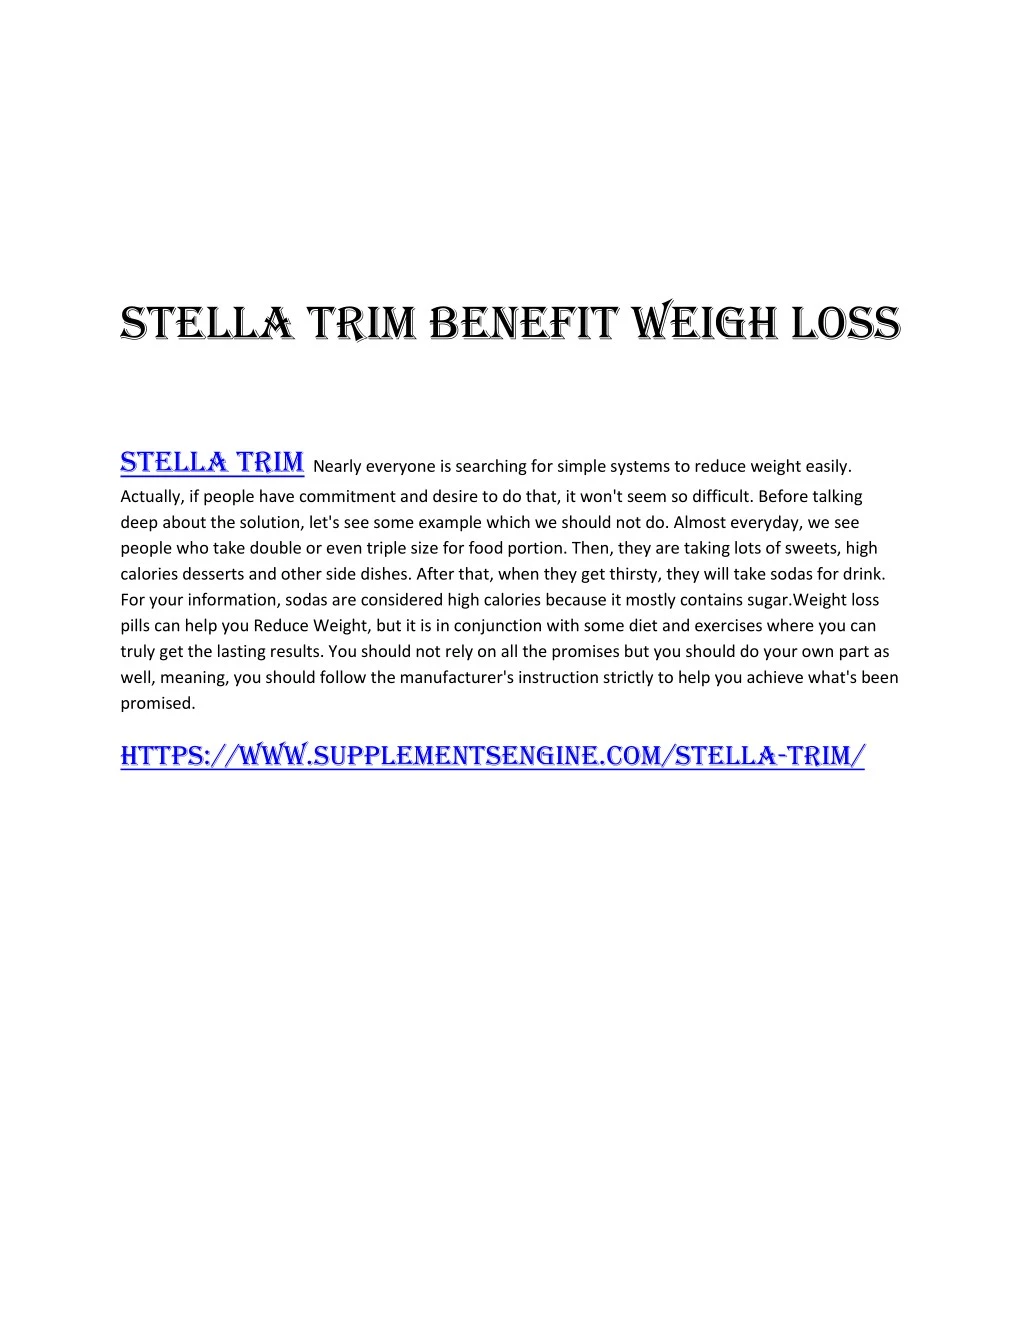 stella trim benefit weigh loss